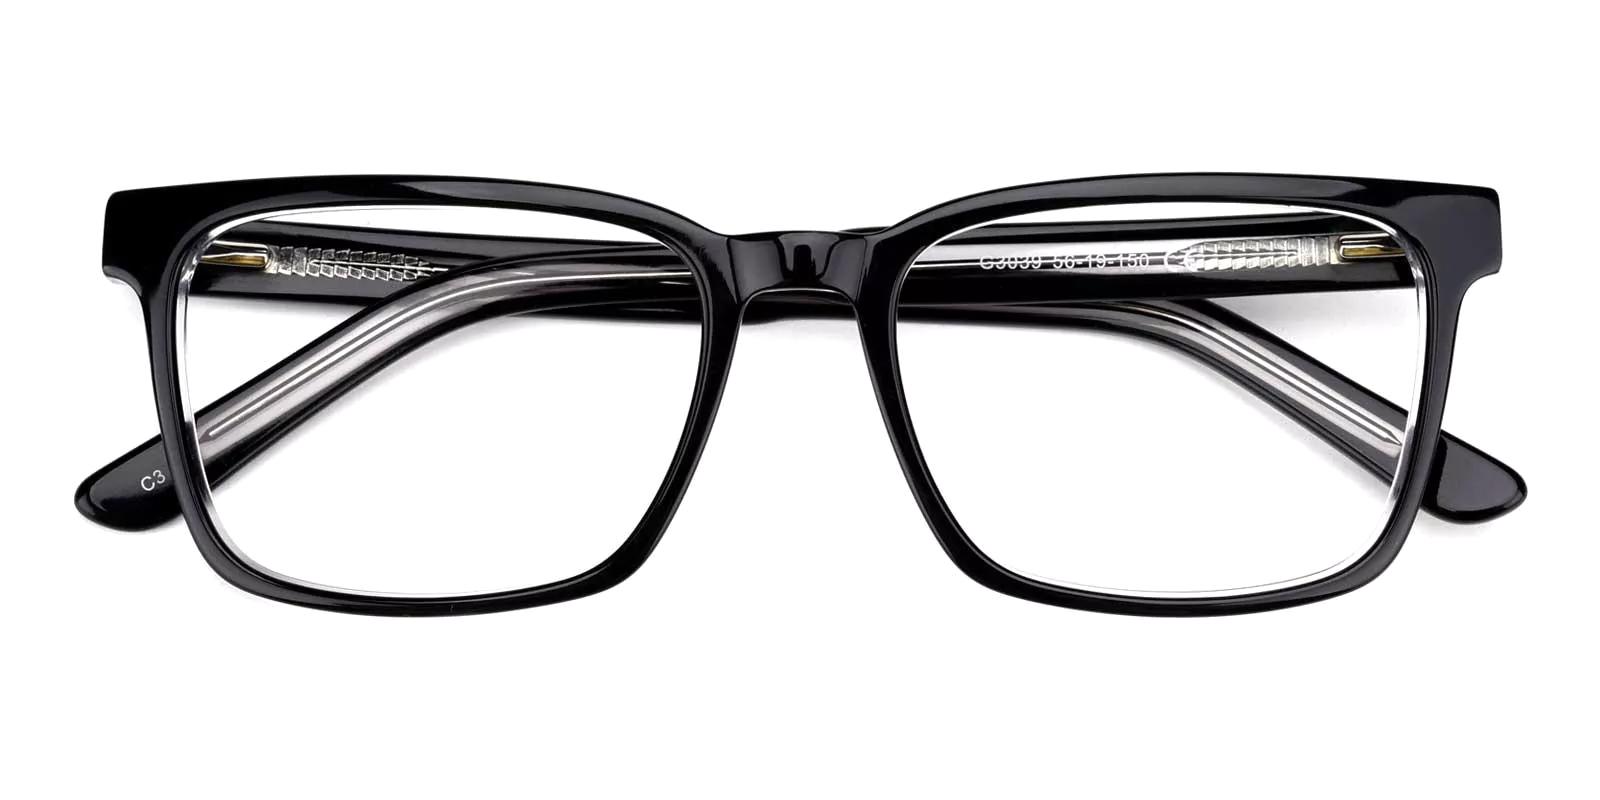 Merg Black Acetate Eyeglasses , SpringHinges , UniversalBridgeFit Frames from ABBE Glasses